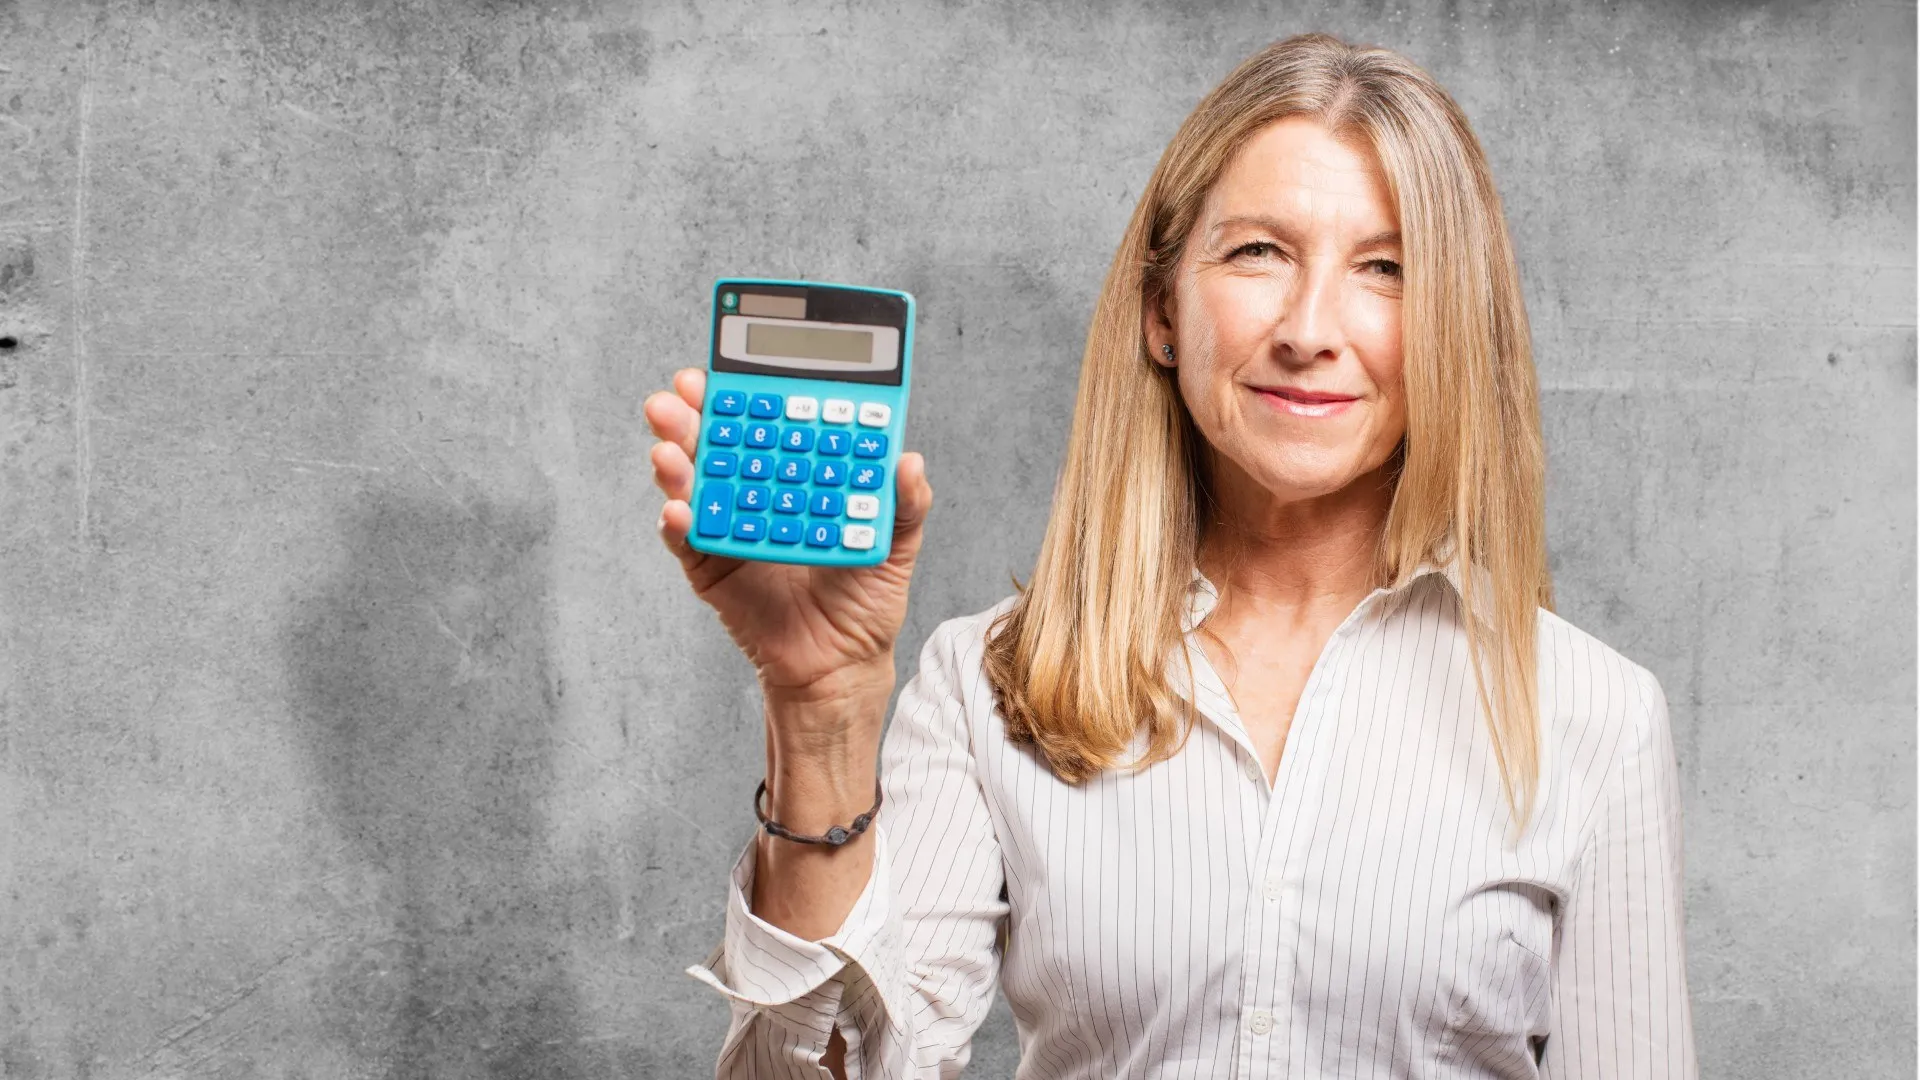 Een vrouw houdt een rekenmachine omhoog tegen een betonnen achtergrond.